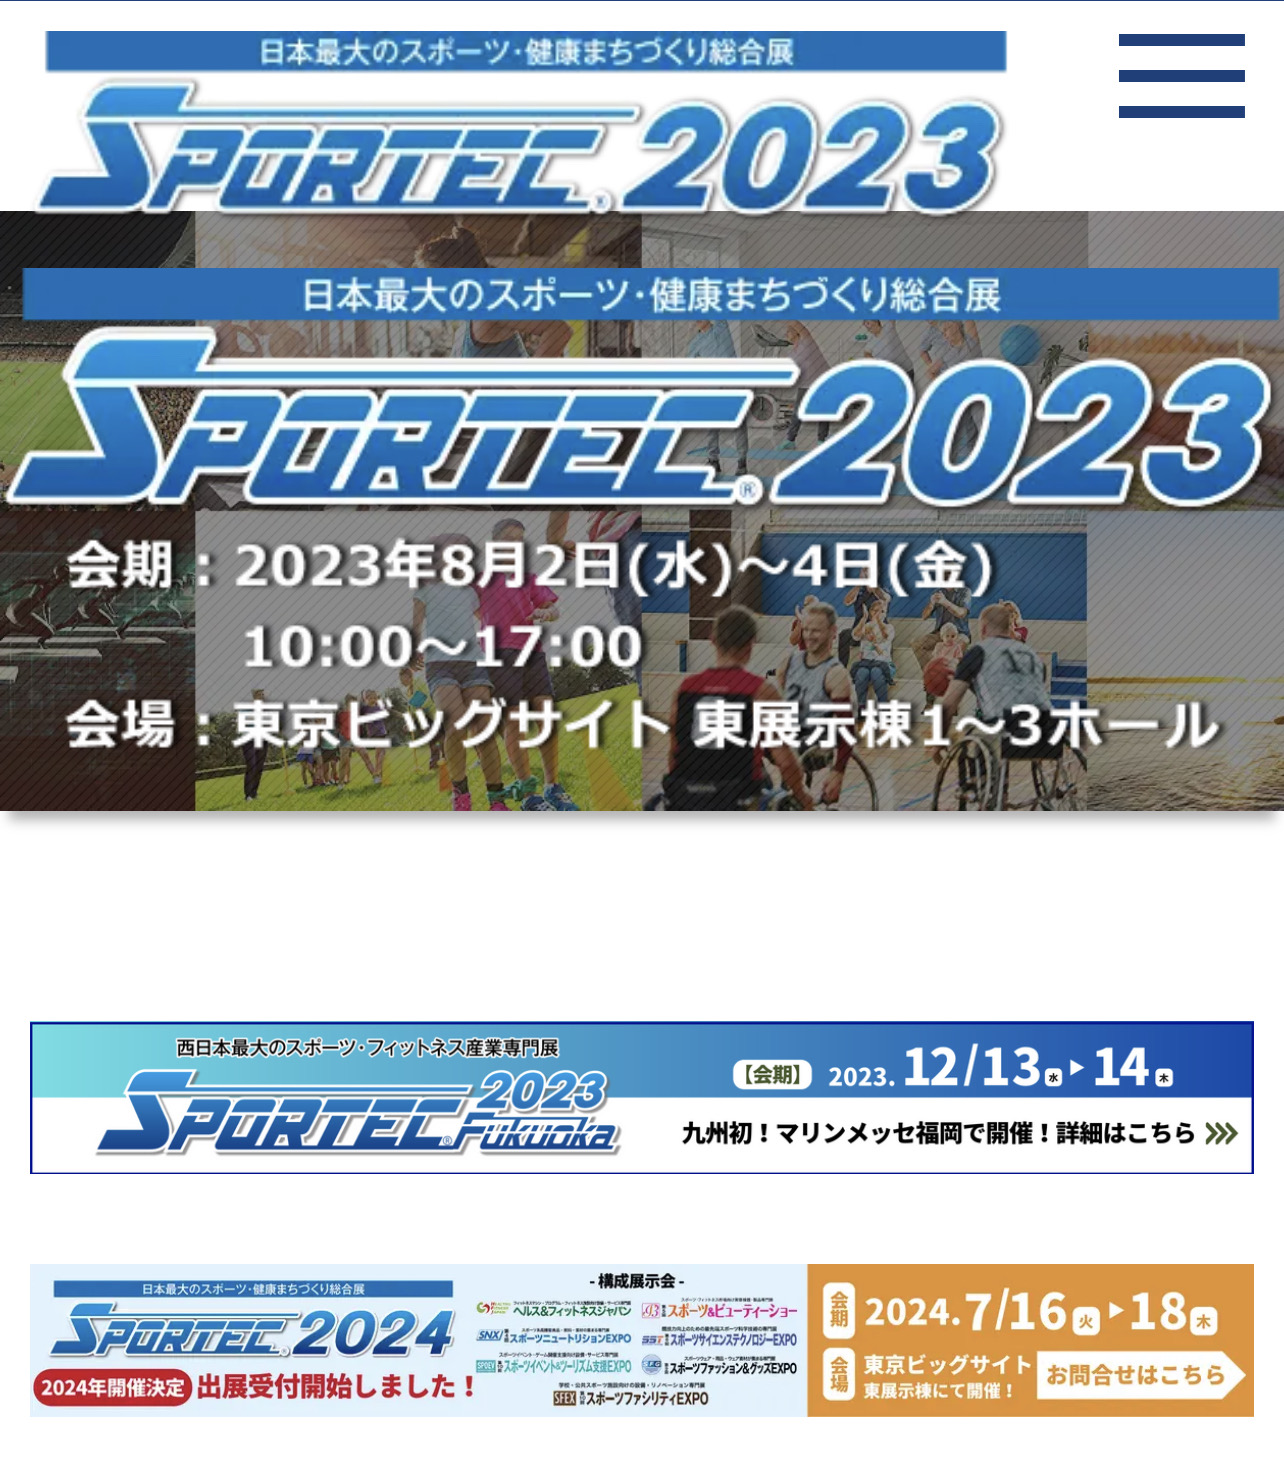 SPORTEC 2023 セミナー開催のお知らせ